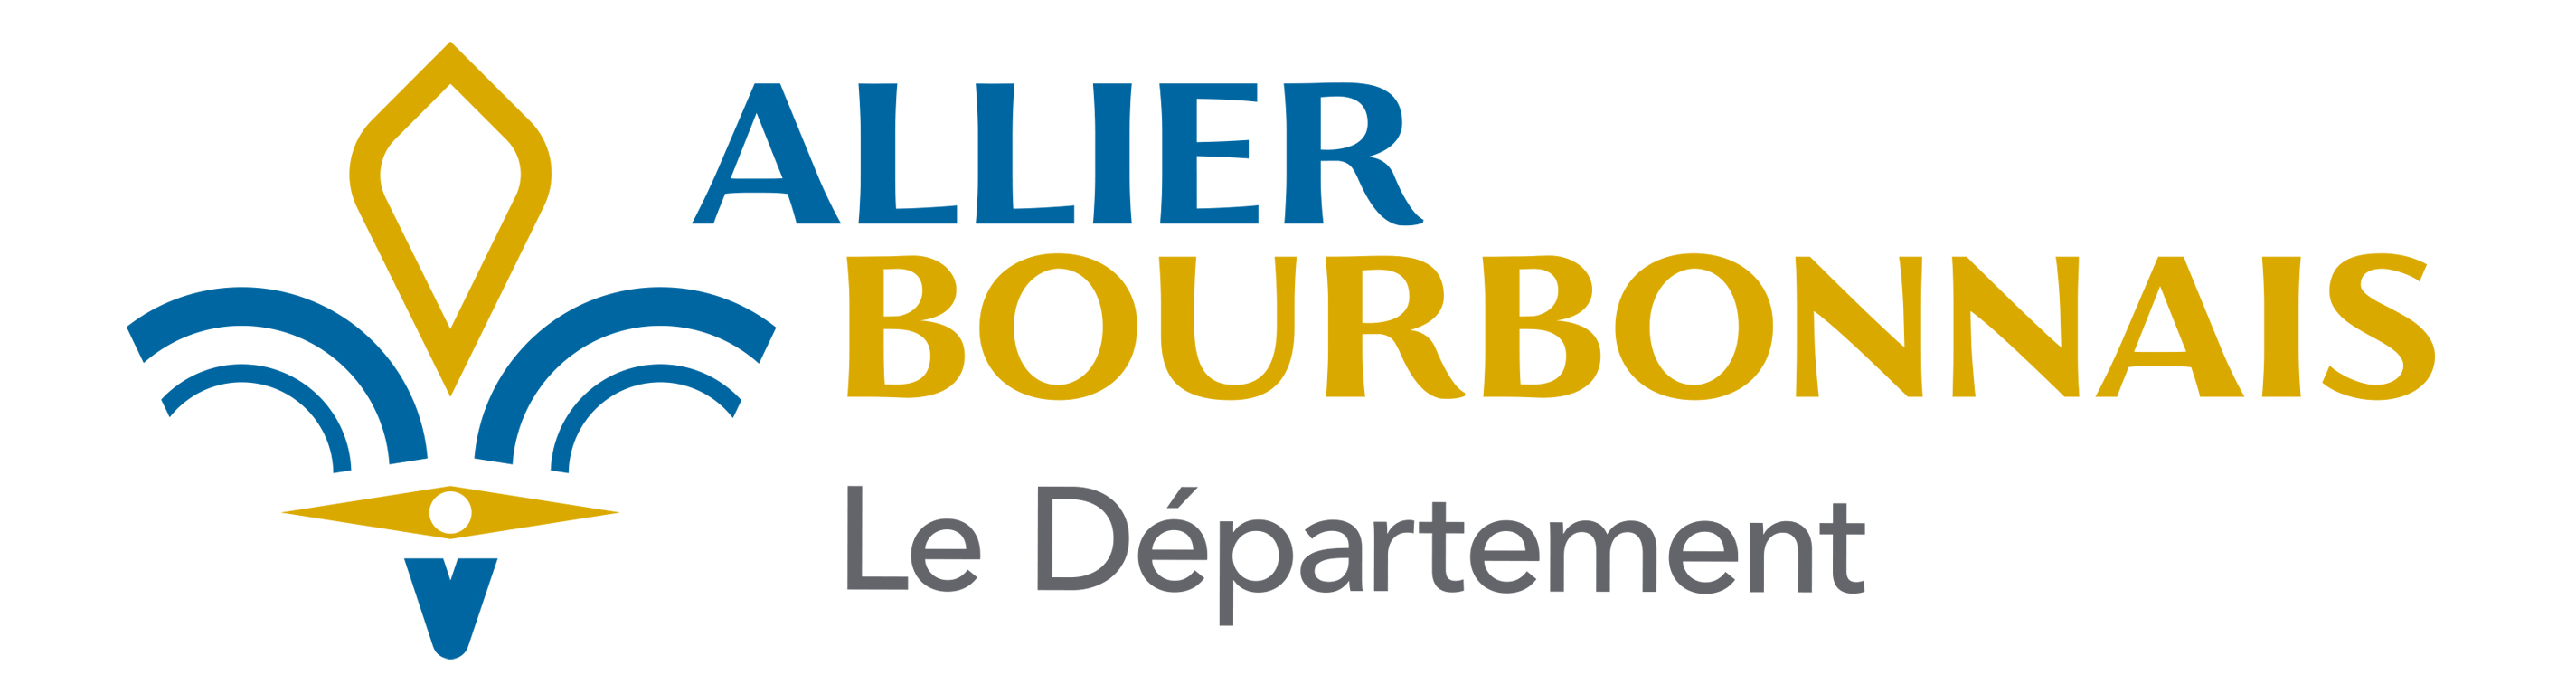 Conseil Départemental de l'Allier | Accueil